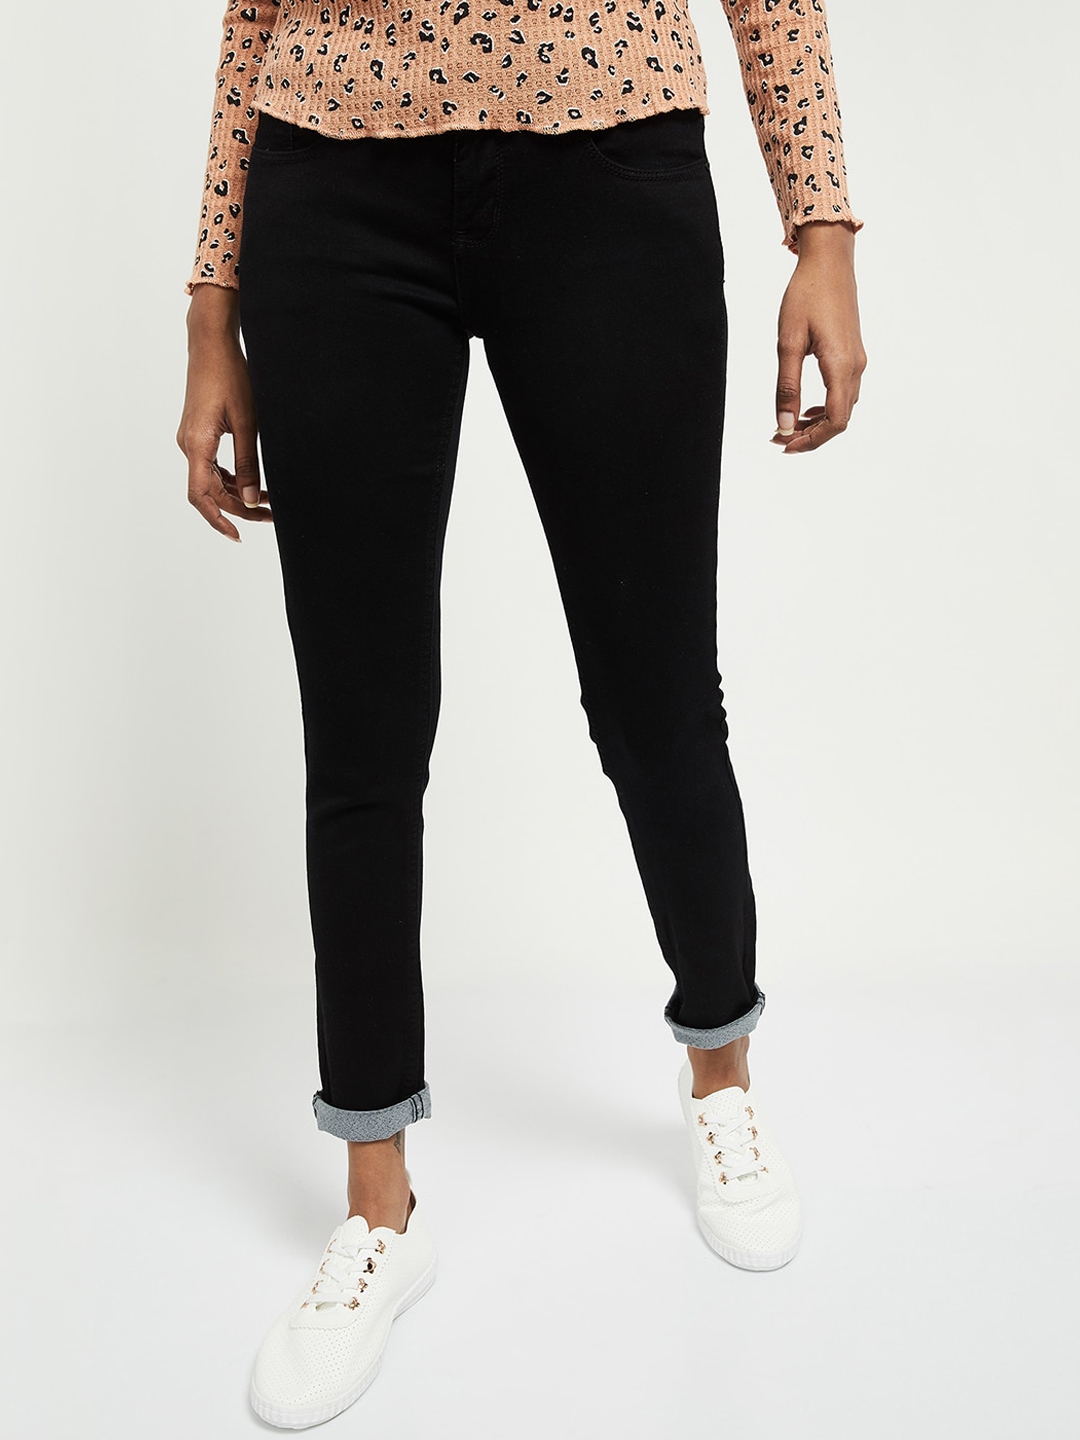 Buy Max Women Black Skinny Fit Jeans - Jeans for Women 15199104 | Myntra